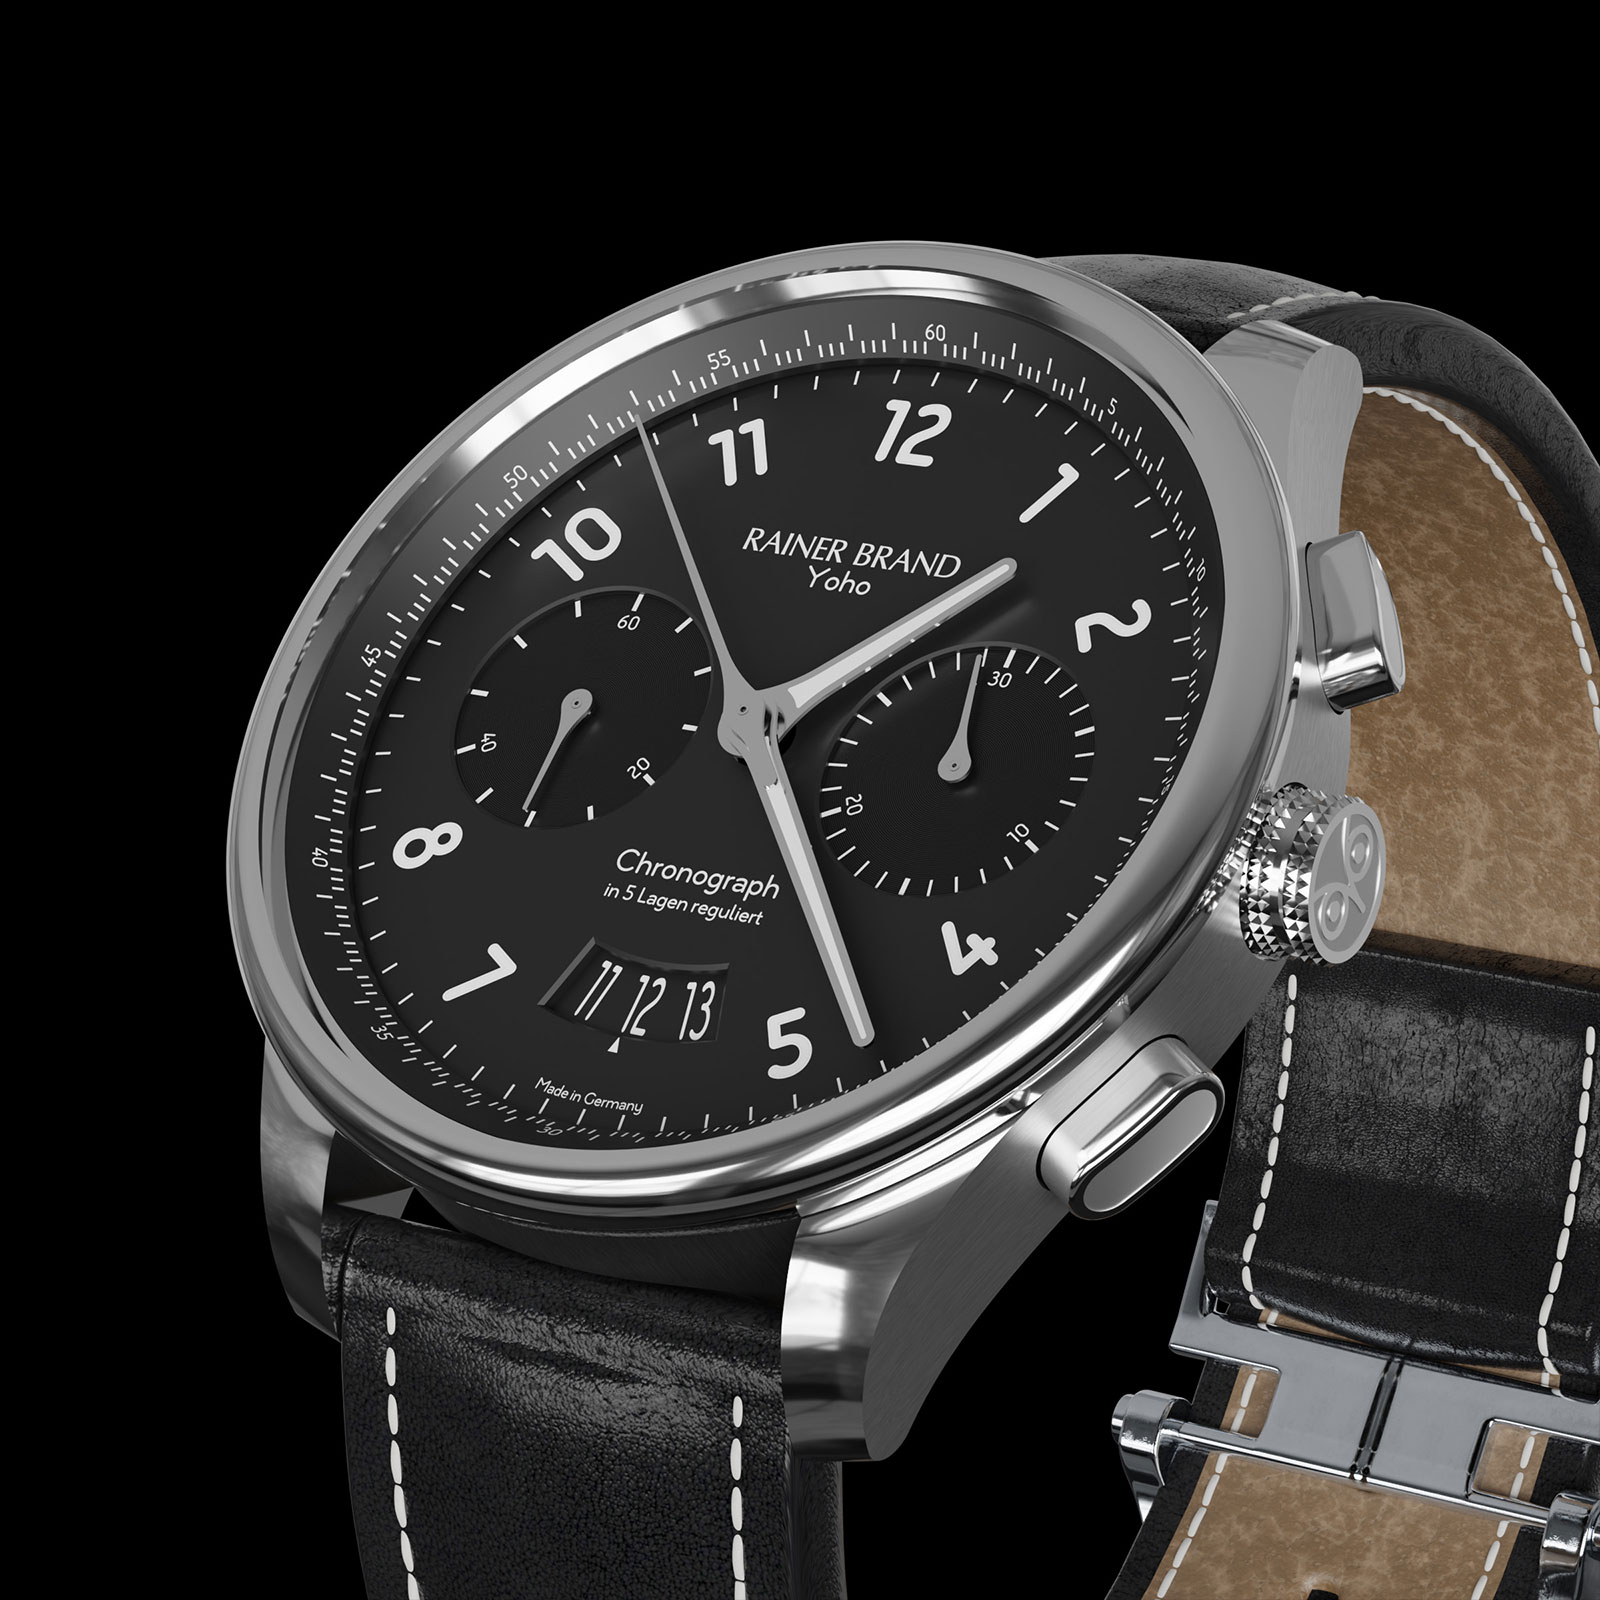 Retrospective • Rainer Brand - Produktion hochwertiger mechanischer Uhren | Quarzuhren